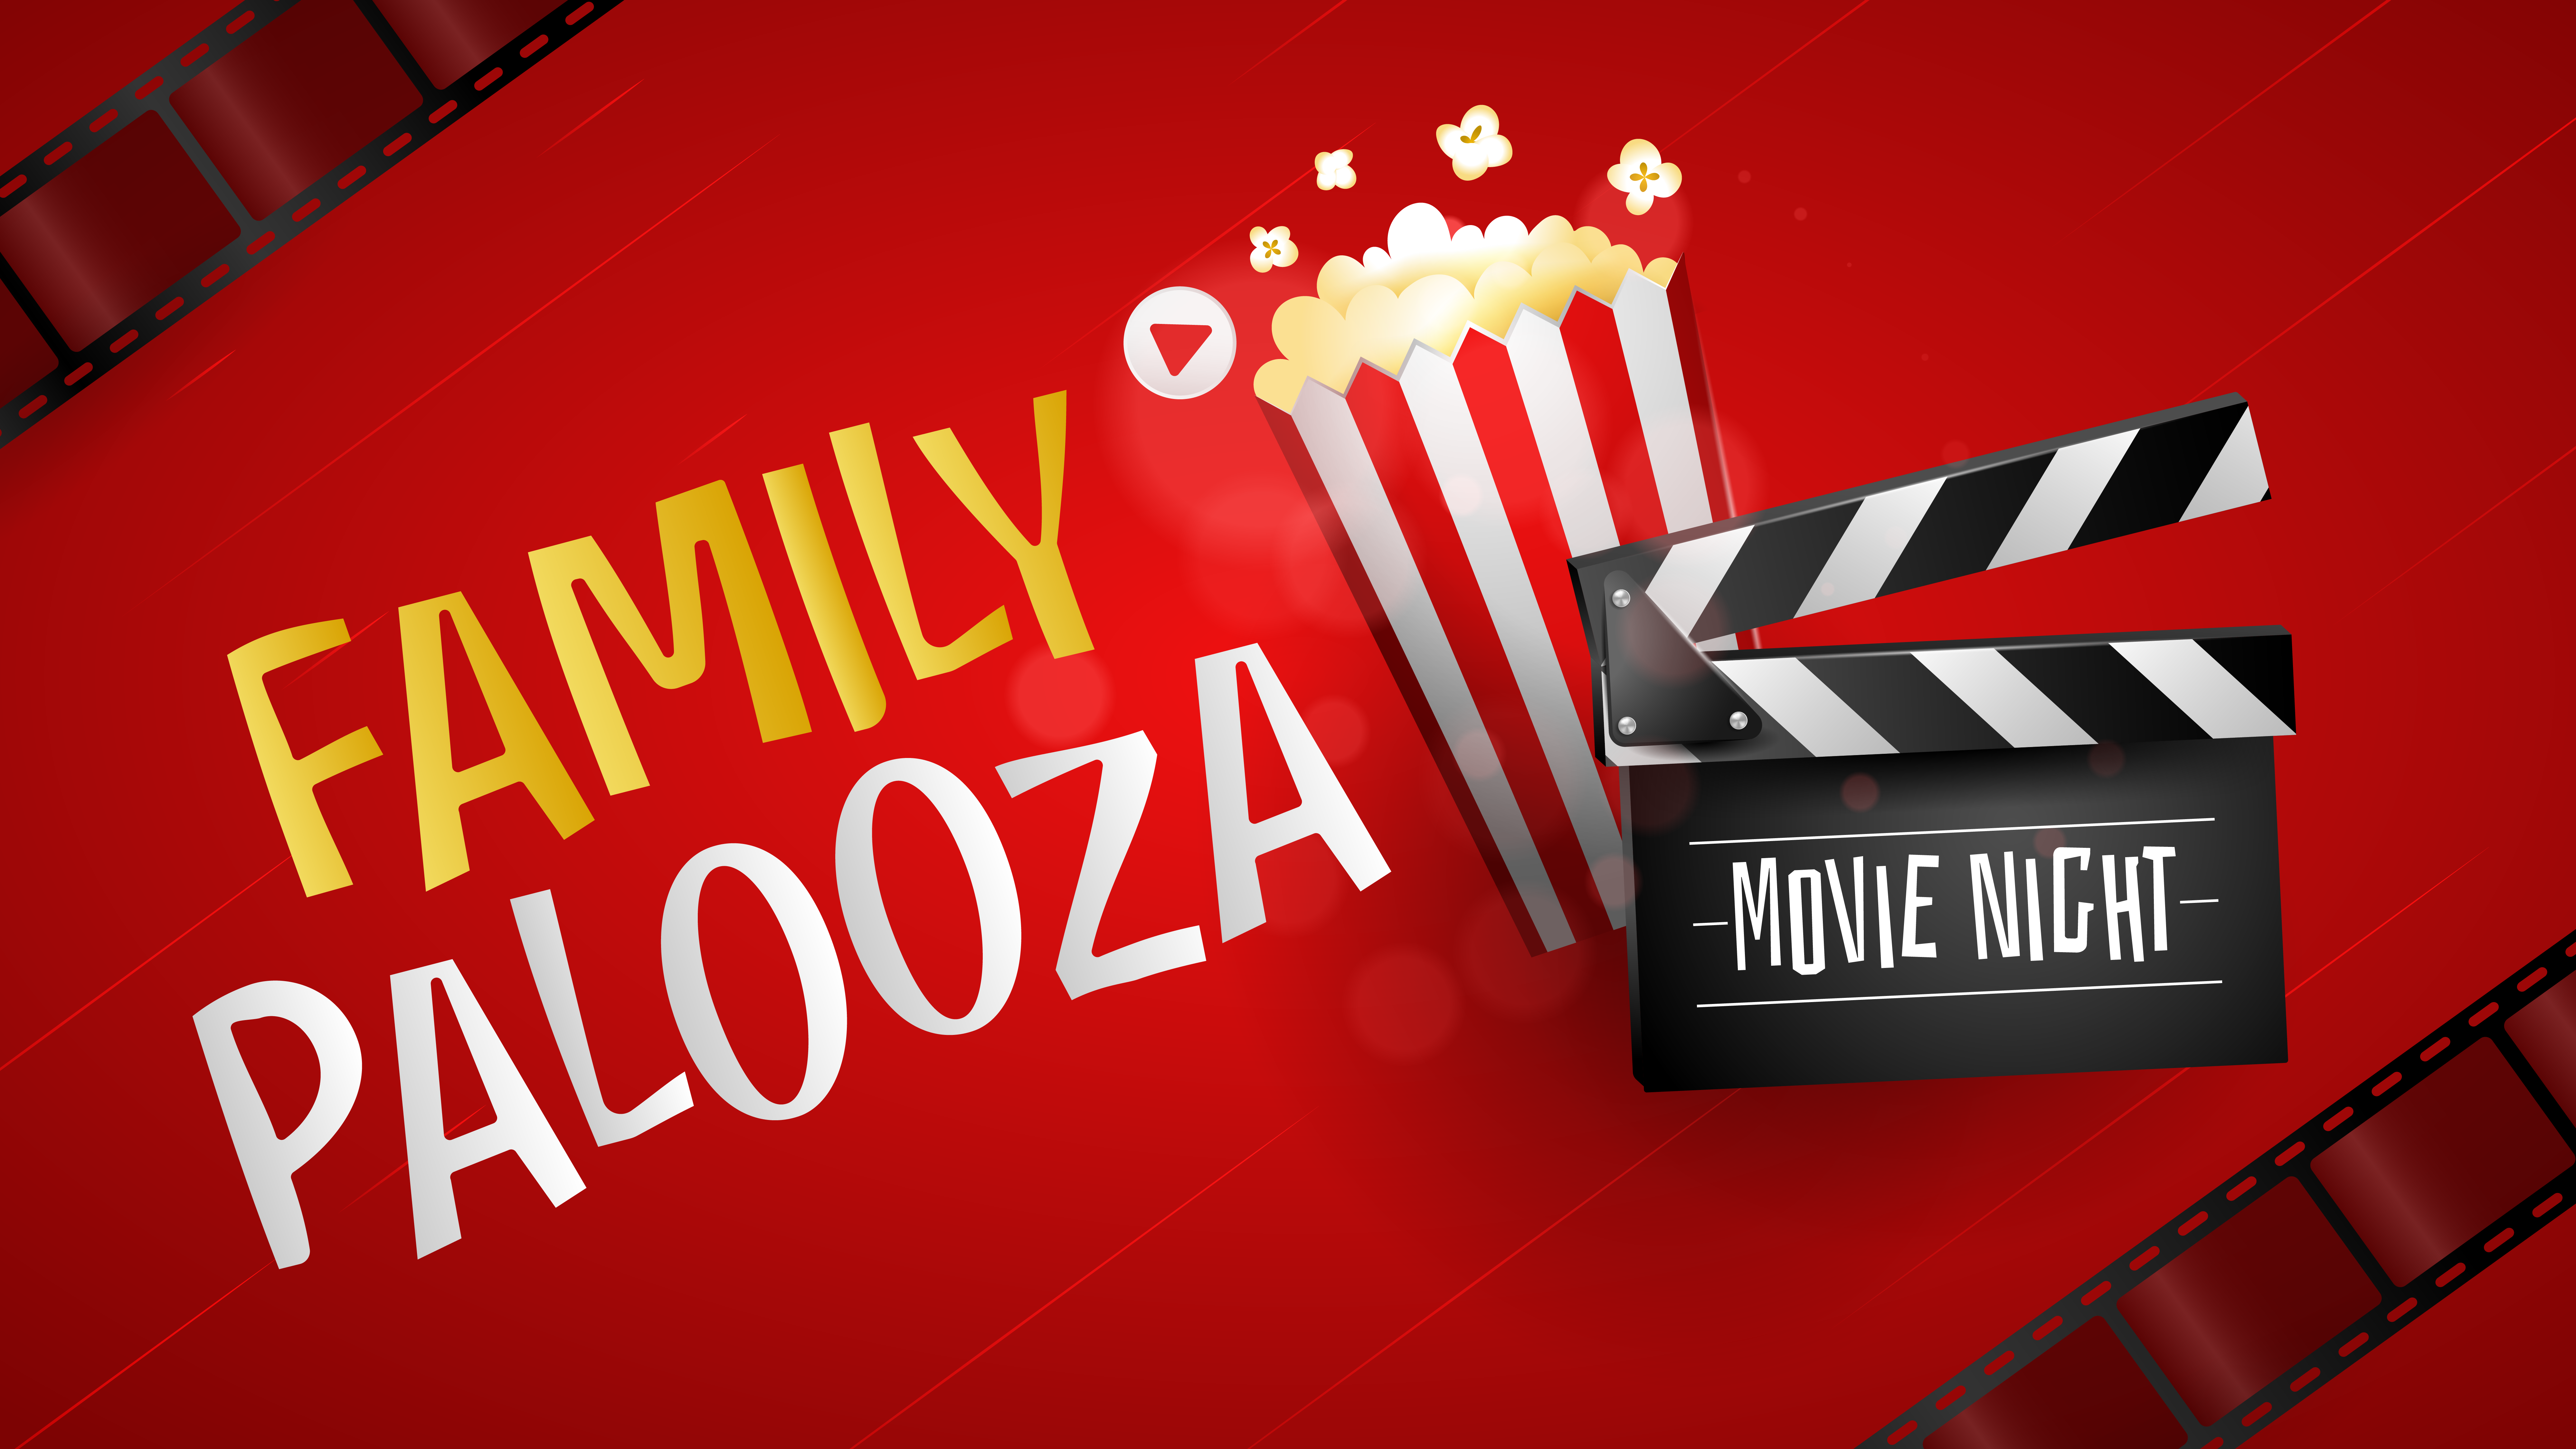 family palooza movie